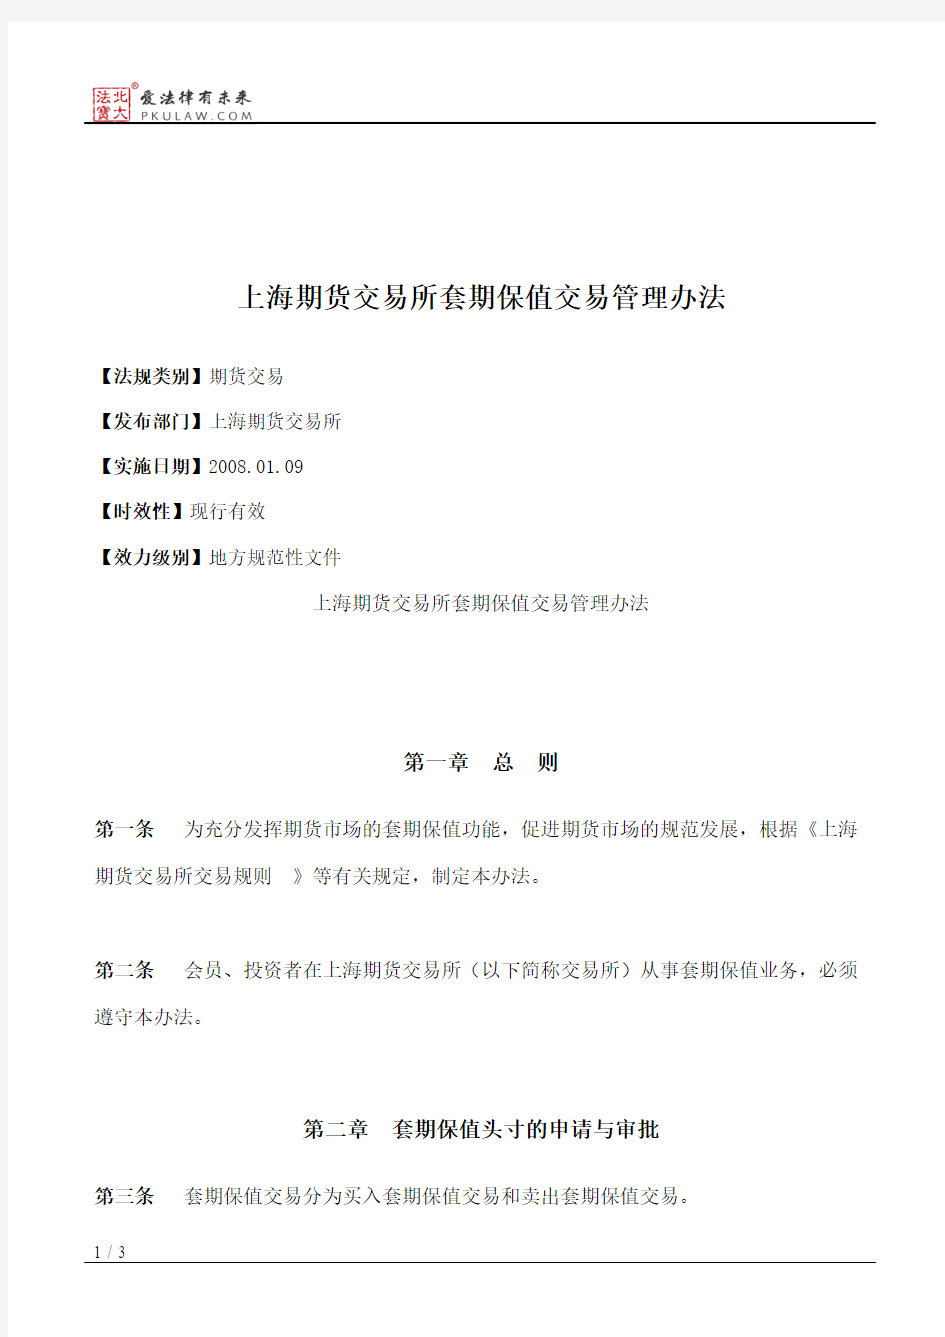 上海期货交易所套期保值交易管理办法